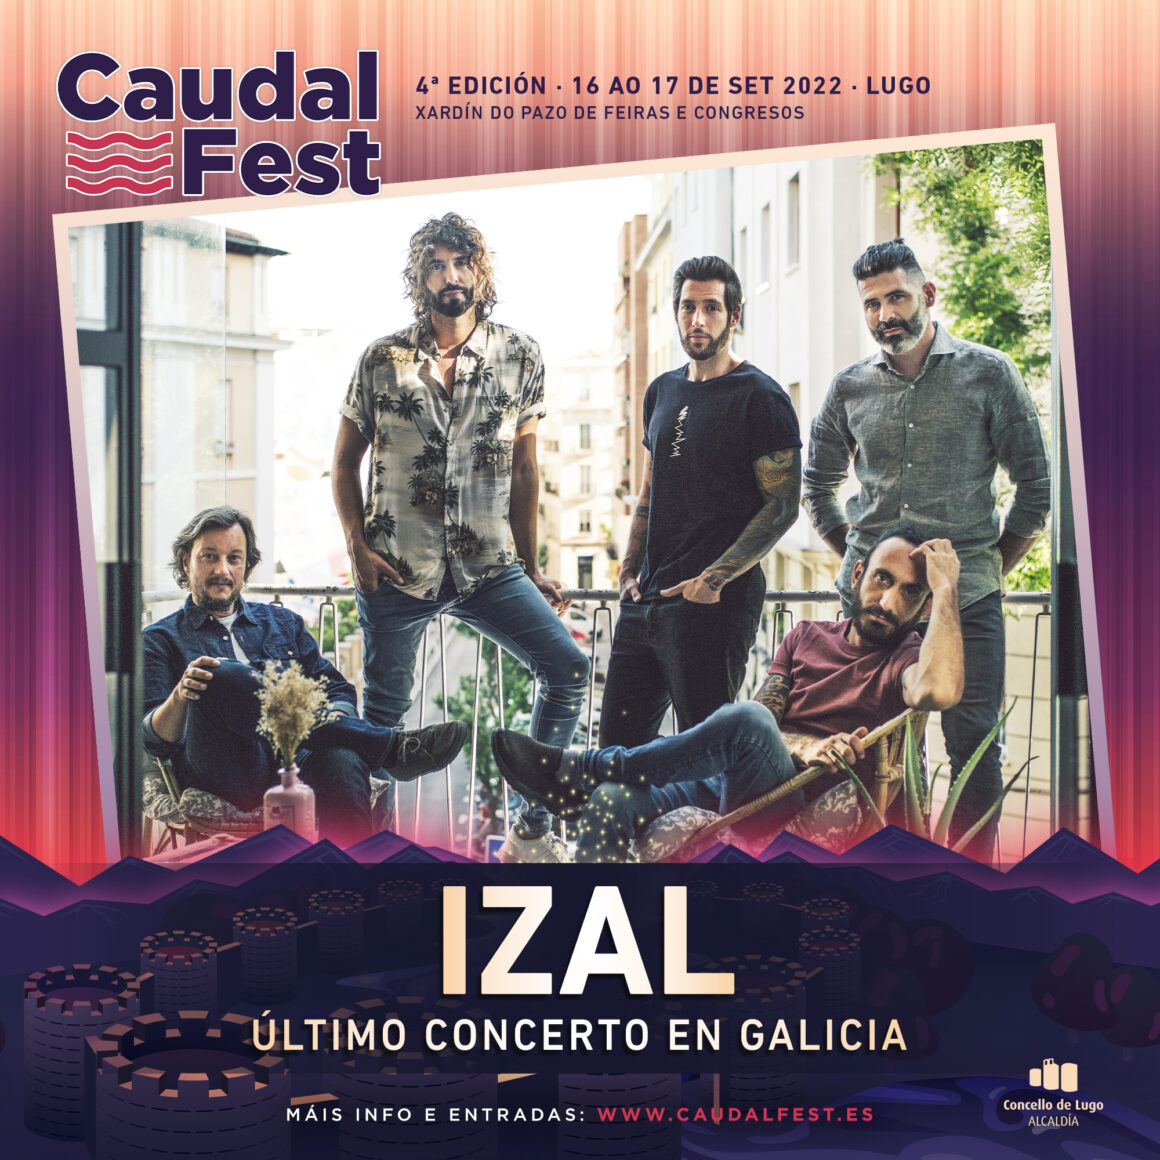 El último concierto de Izal en Galicia será en el Caudal Fest. Cartel por días y entradas a la venta